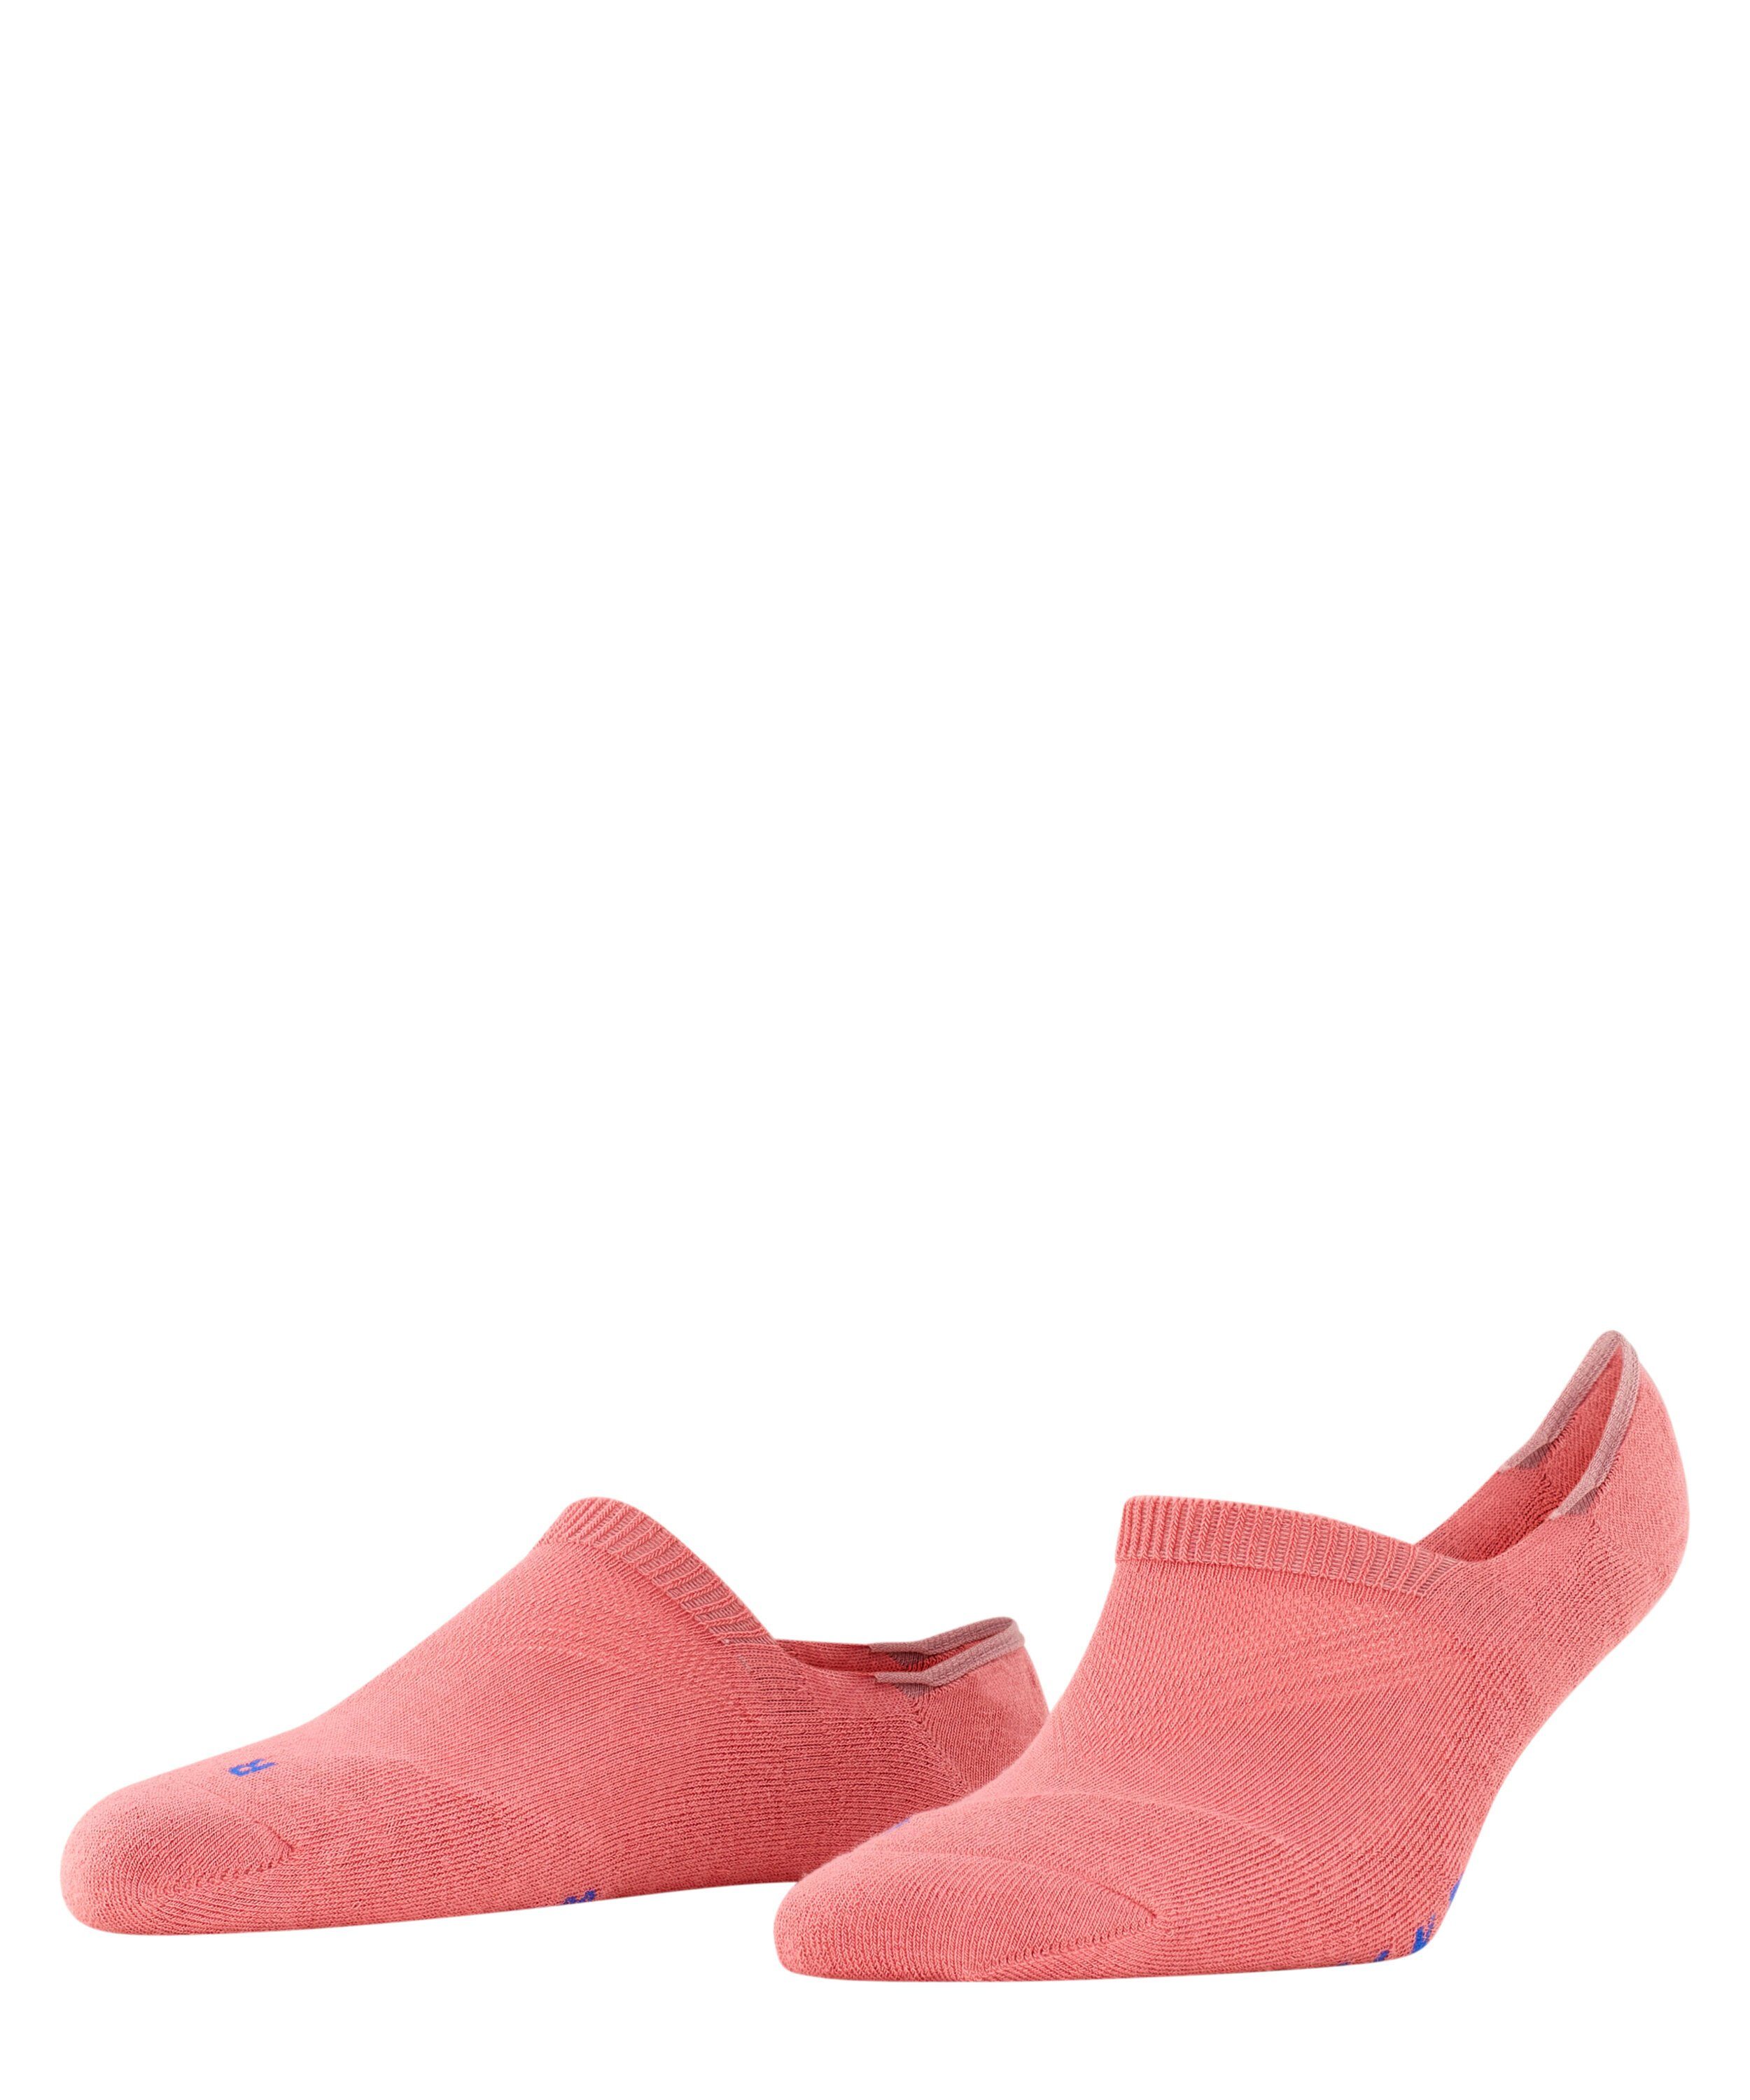 FALKE Füßlinge Cool Kick rutschfest durch Silikon in der Ferse powder pink (8684) | Sneakersocken